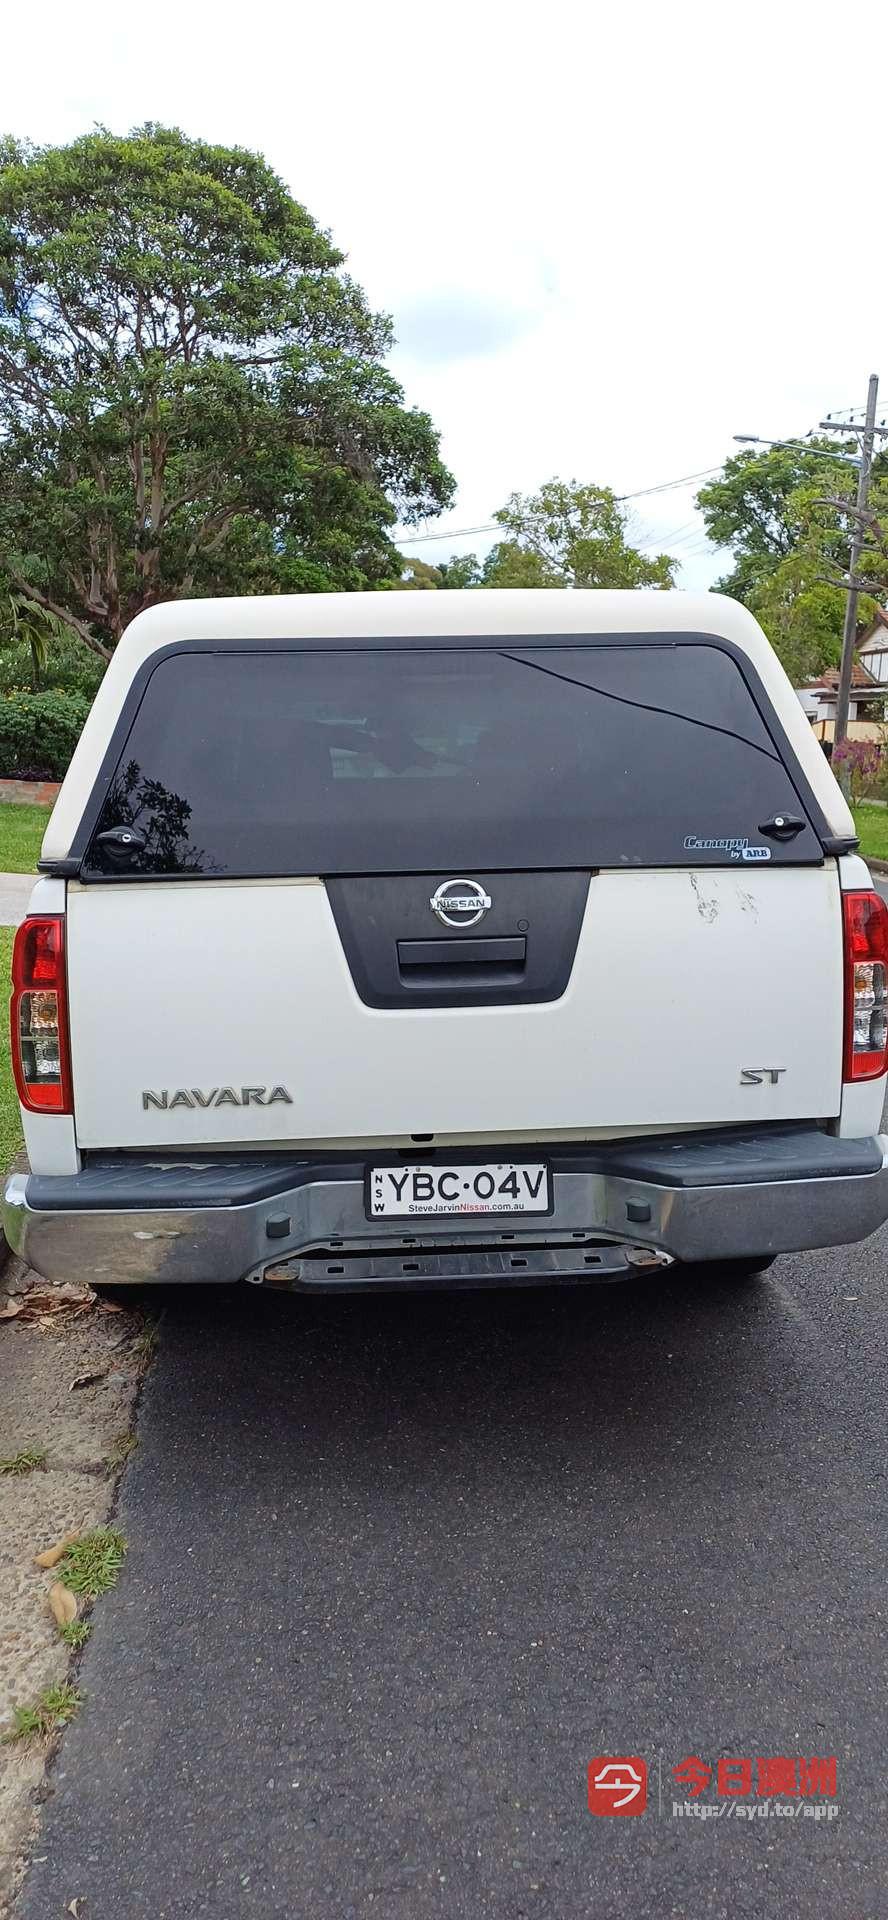 Nissan 2012年 Navara 25L 自动